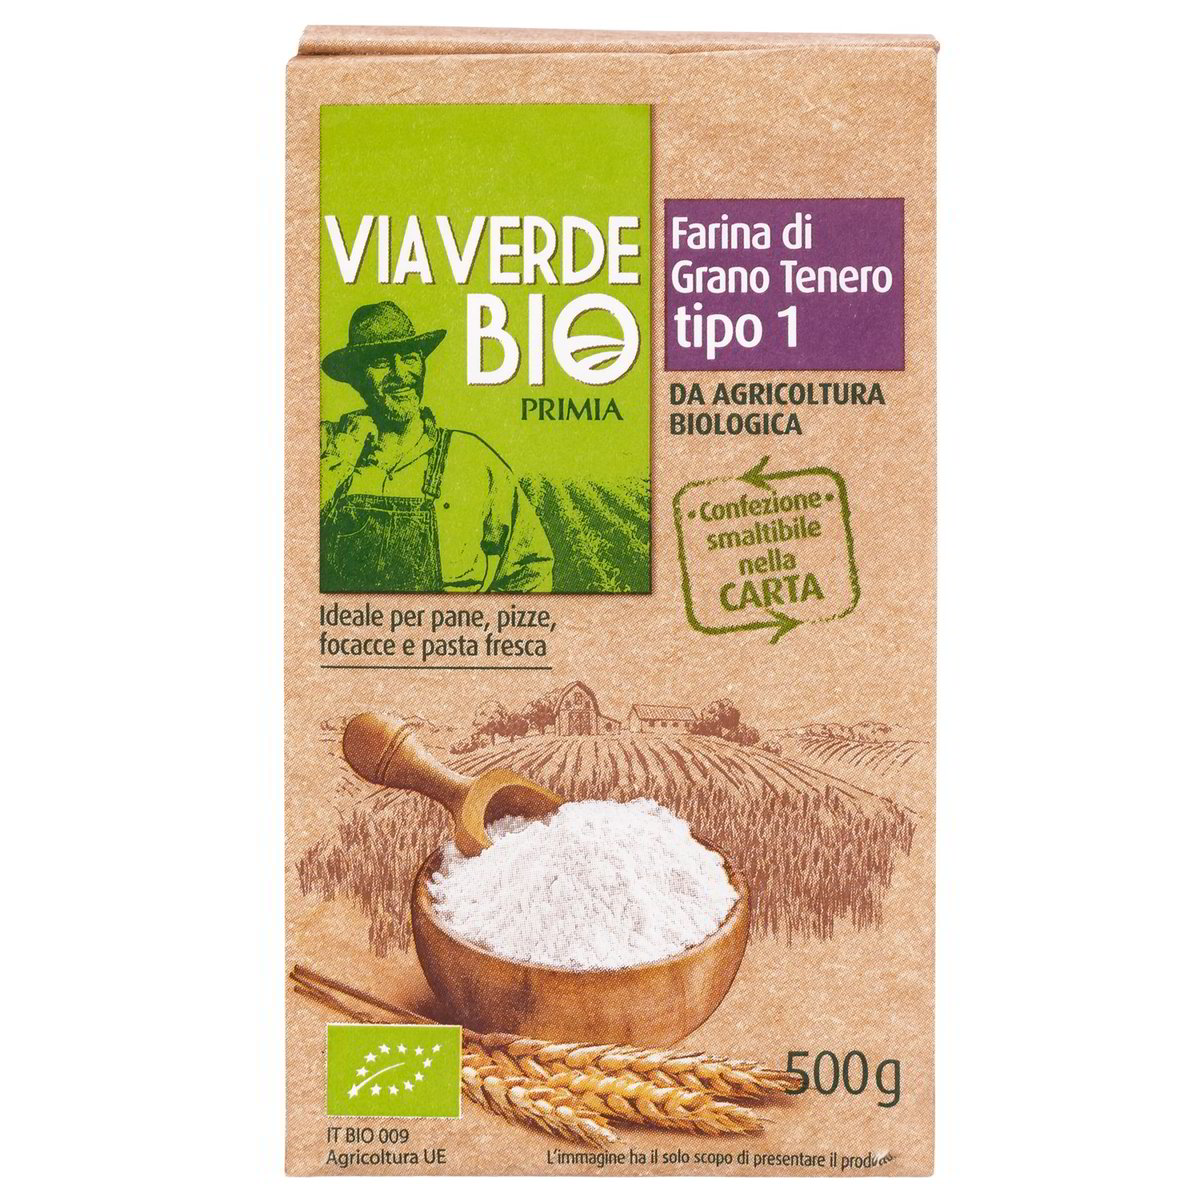 Primia Farina di grano tenero Via Verde Bio